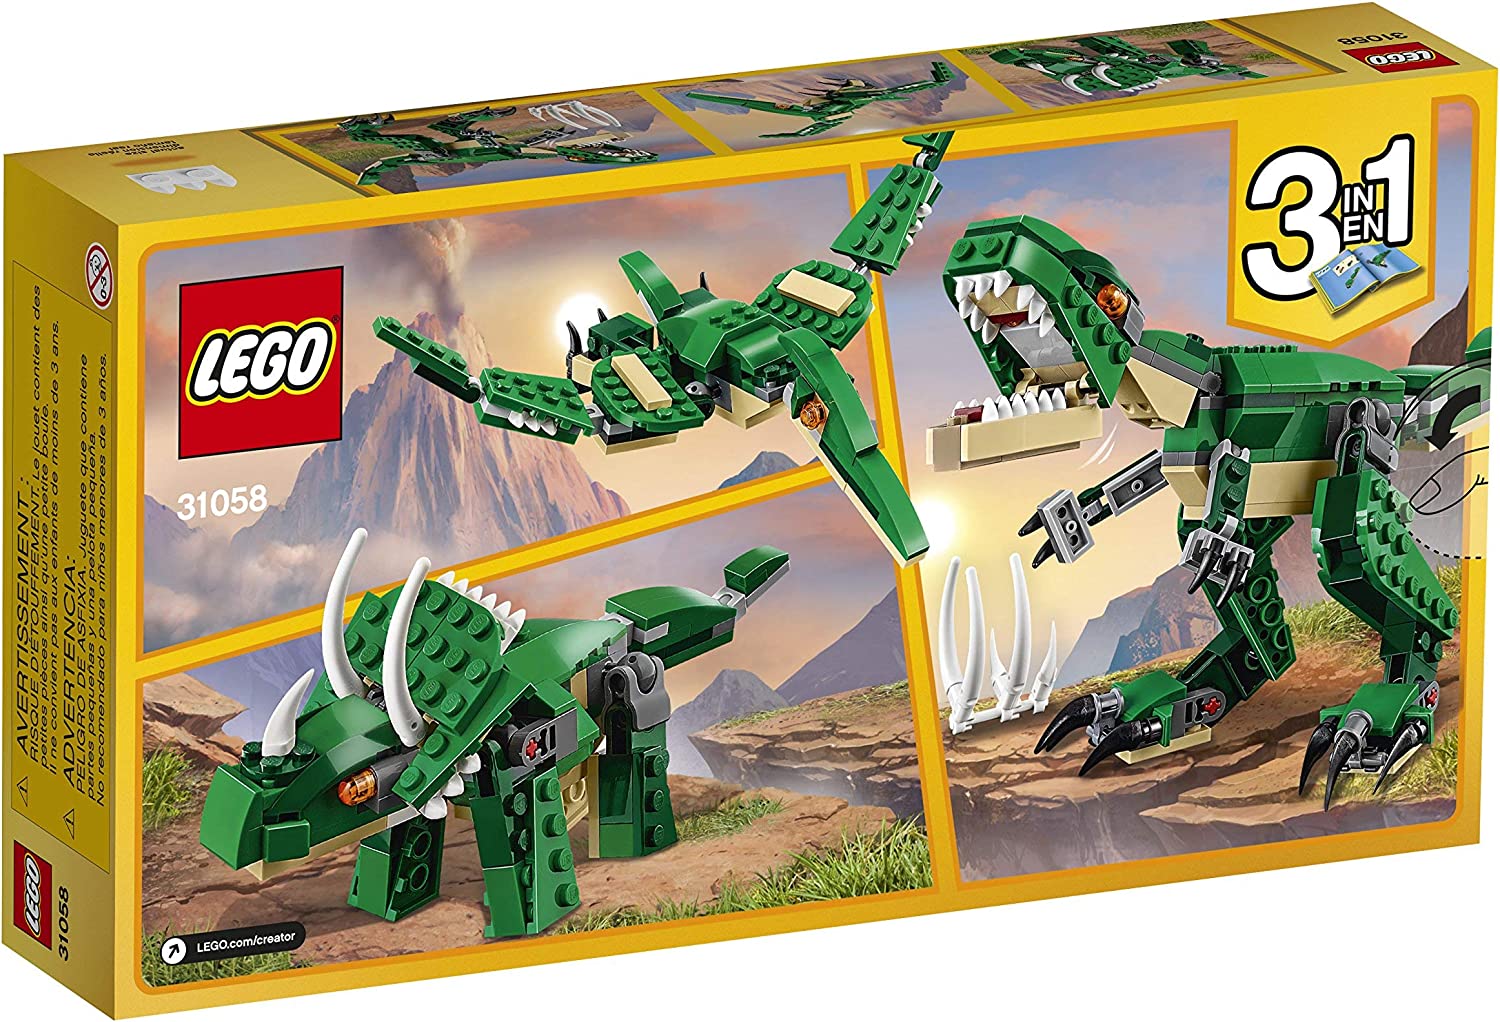 kor Havbrasme buffet LEGO Creator 31058 3-in-1 Mighty Dinosaurs - West Side Kids Inc